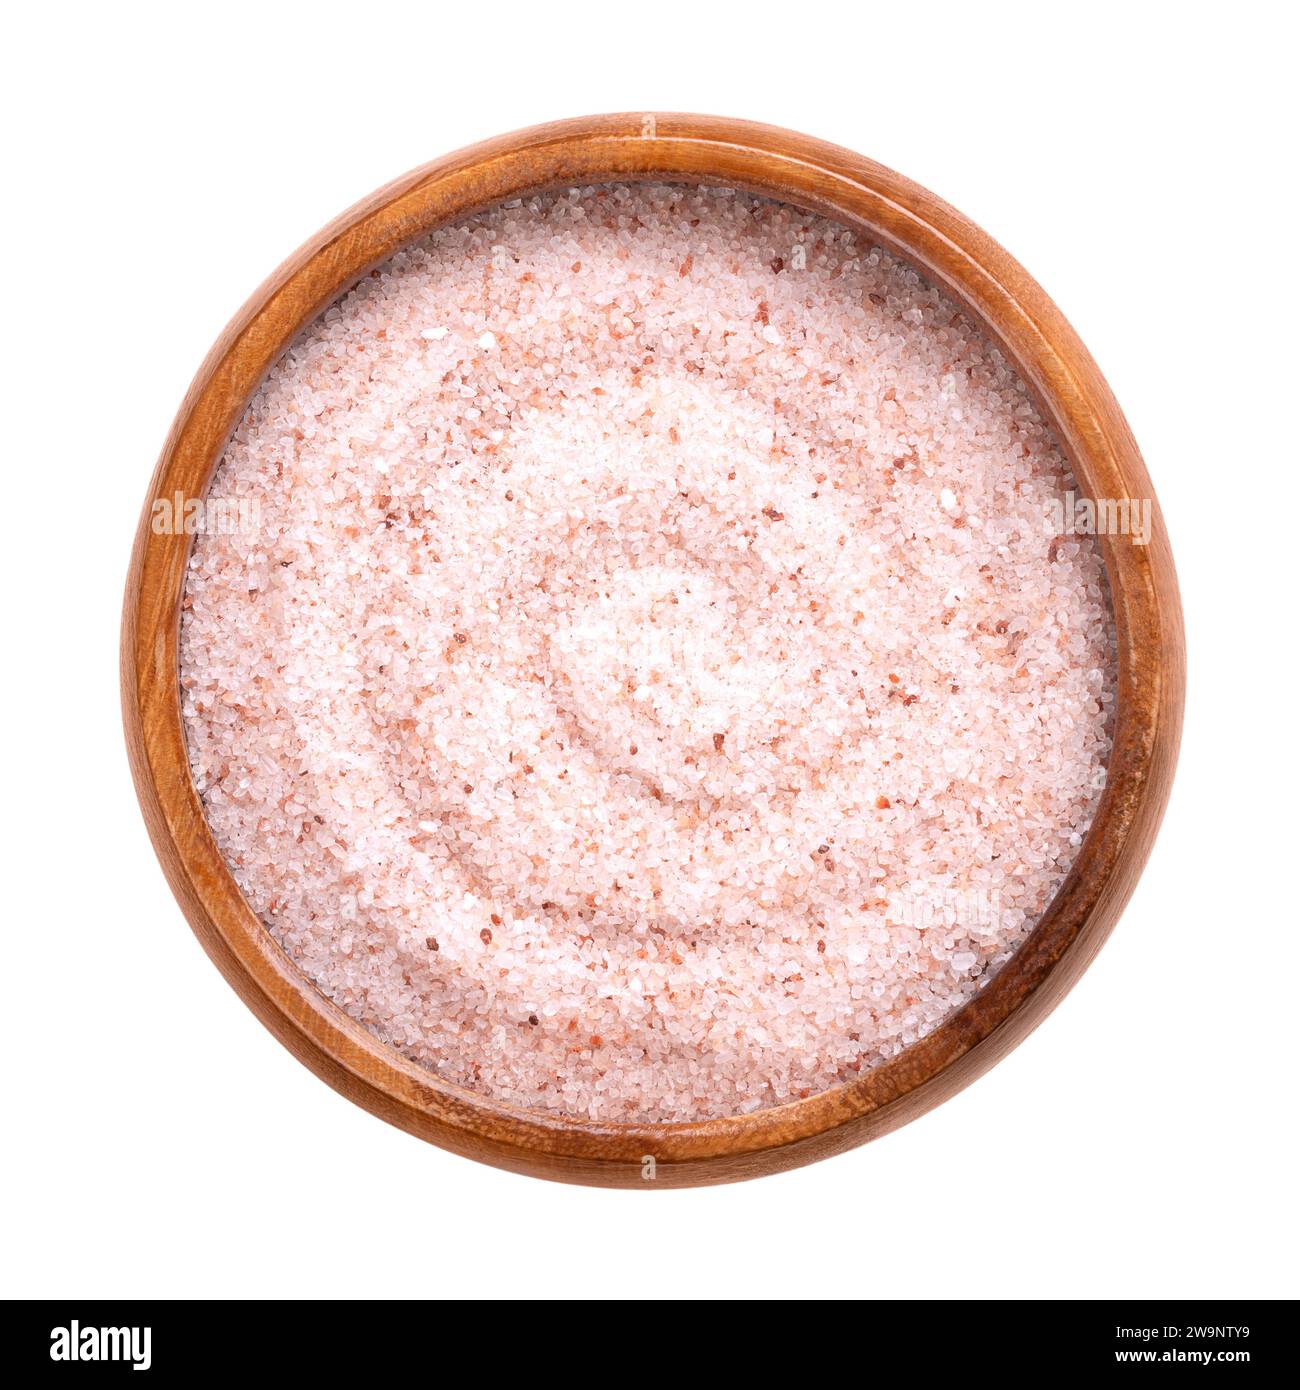 Sel rose de l'Himalaya fin, dans un bol en bois. Sel fin de l'Himalaya, sel gemme et halite avec une teinte rosâtre, due aux oligo-éléments. Banque D'Images